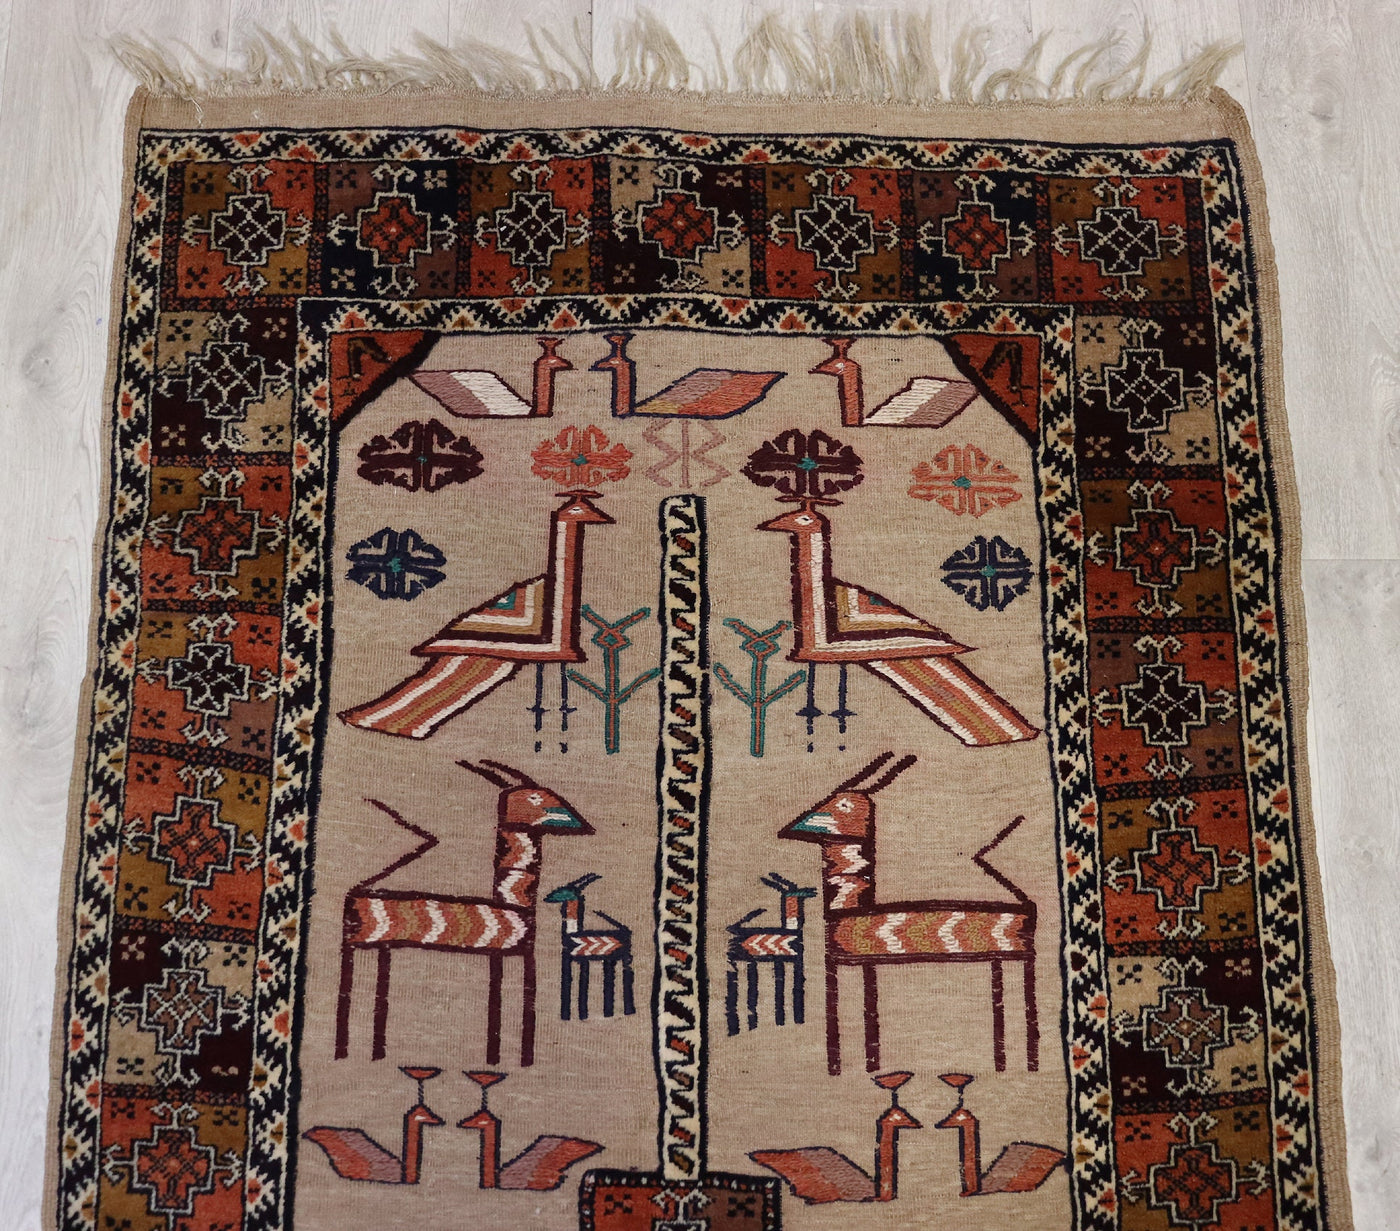 200x100 cm Antik orient handgewebte Teppich Nomaden Balouch sumakh kelim afghan Beloch Flur Läufer kilim Nr- 556 Teppiche Orientsbazar   